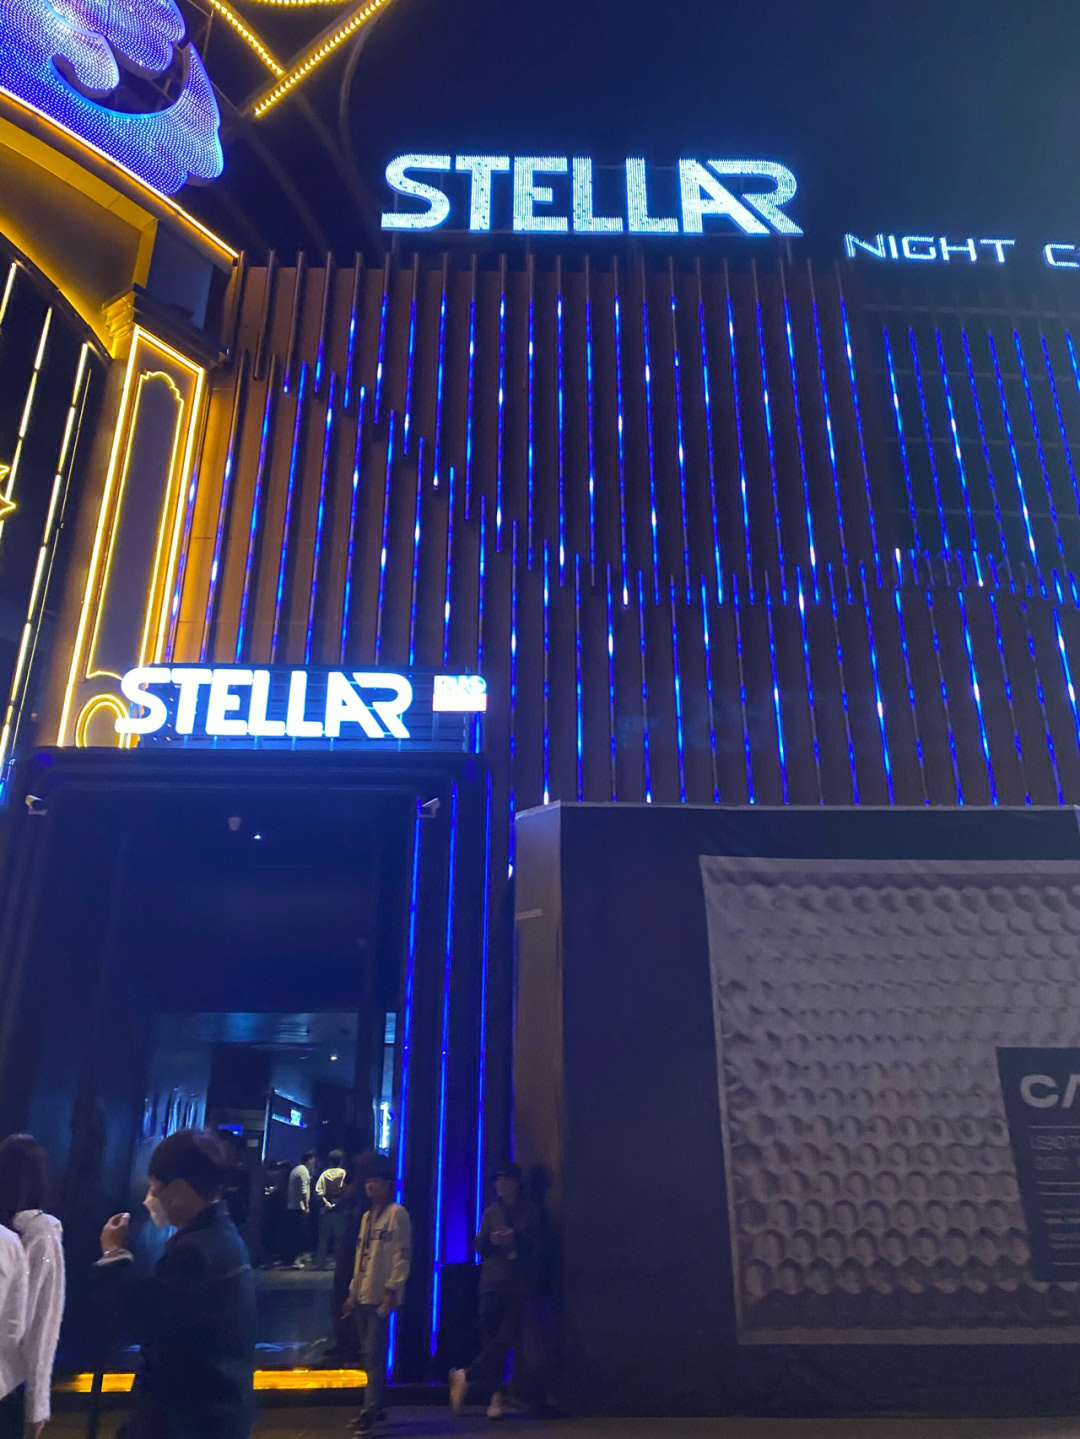 厦门星际酒吧 stellar nigth club 位于莲坂明发商业广场,打车就在